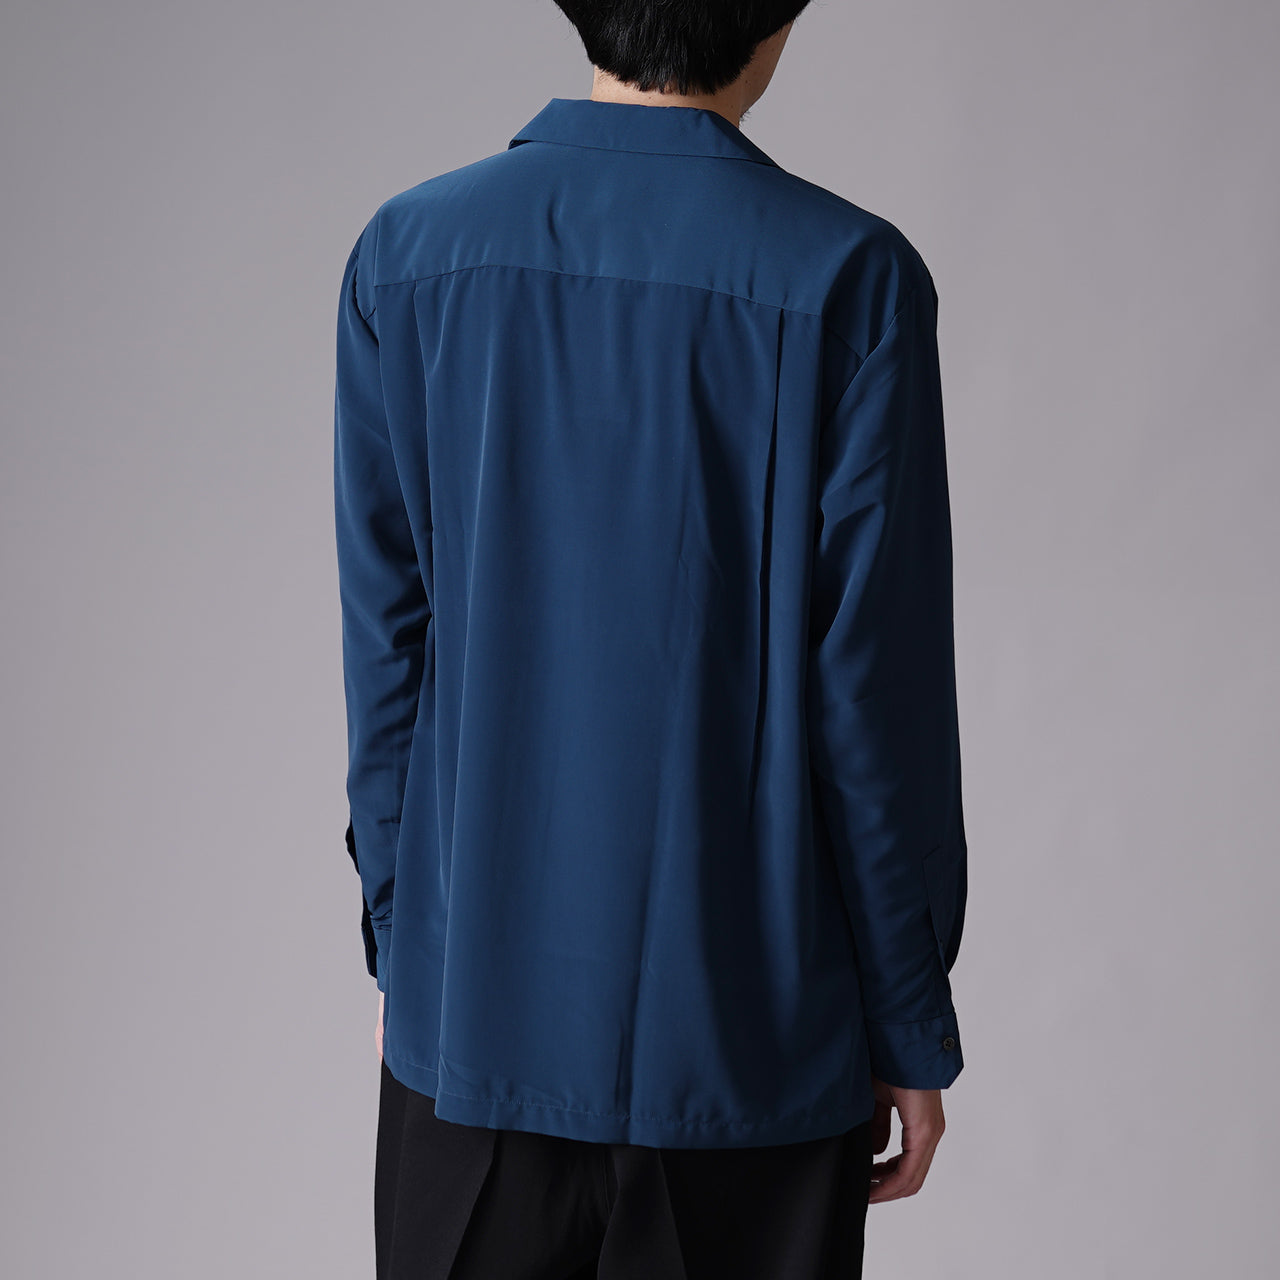 RAINMAKER レインメーカー オープンカラーシャツ OPEN COLLAR L/S SHIRT RM231-041【送料無料】